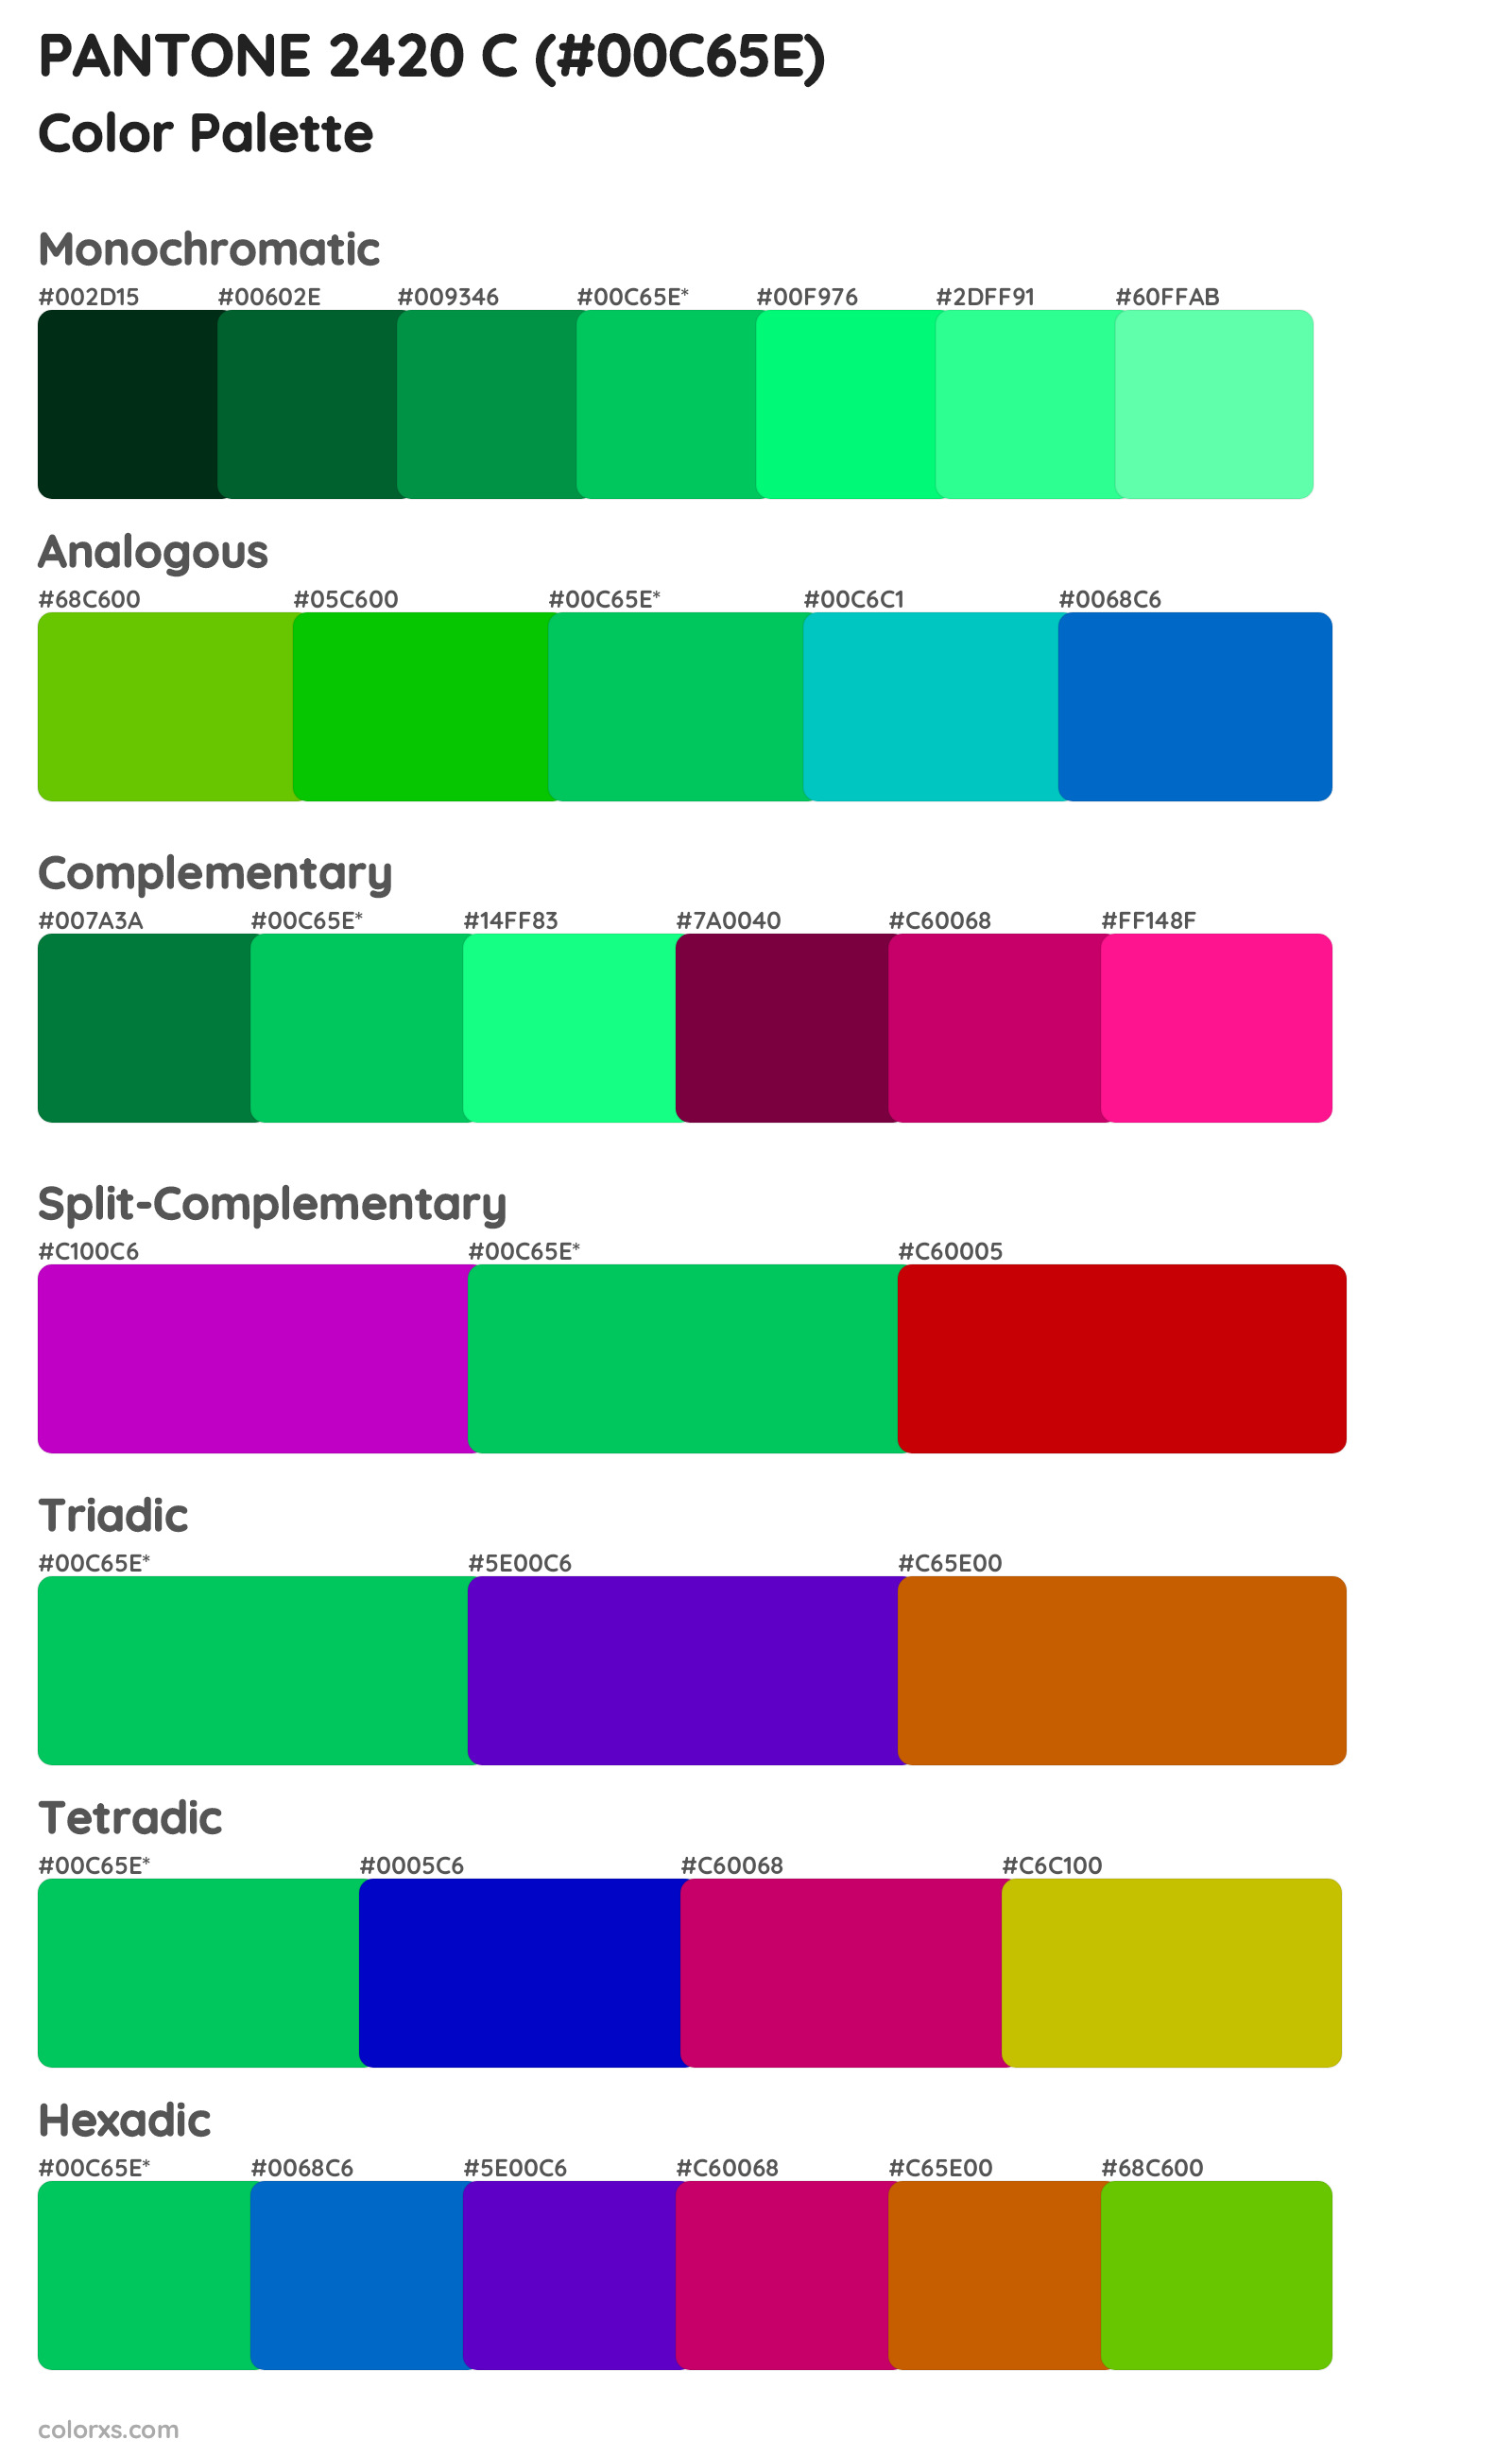 PANTONE 2420 C Color Scheme Palettes